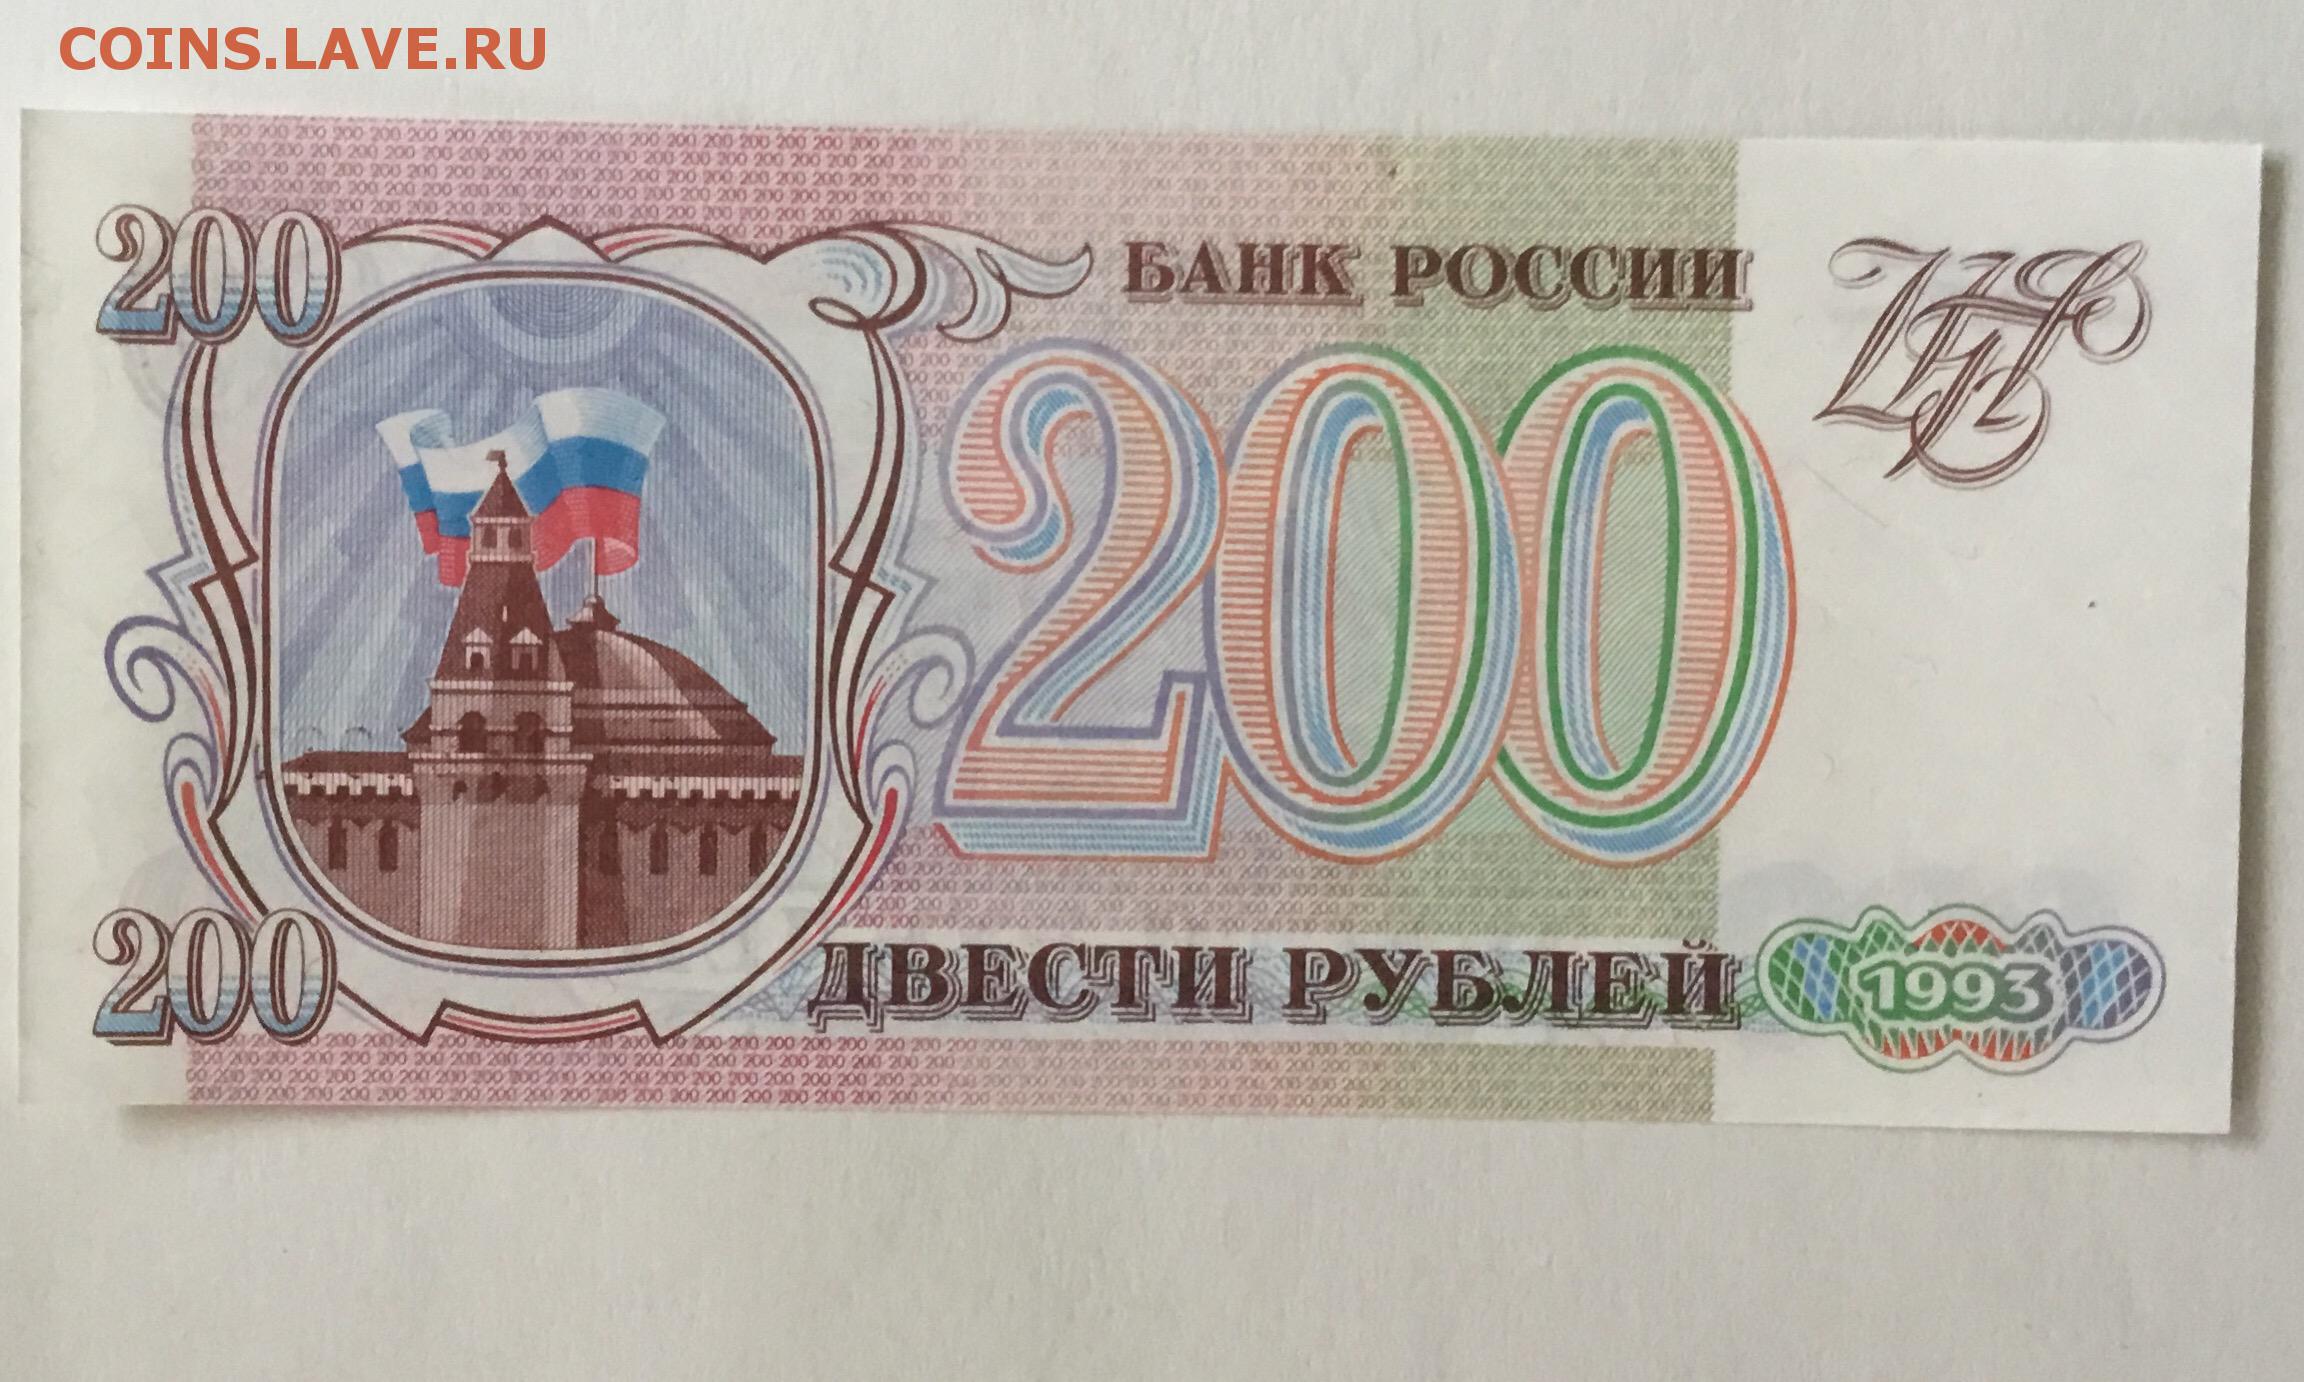 13 200 в рублях. Купюра 200 рублей 1993. 200 Рублей 1993 года. Двести рублей 1993. Банкнота 200 рублей 1993.